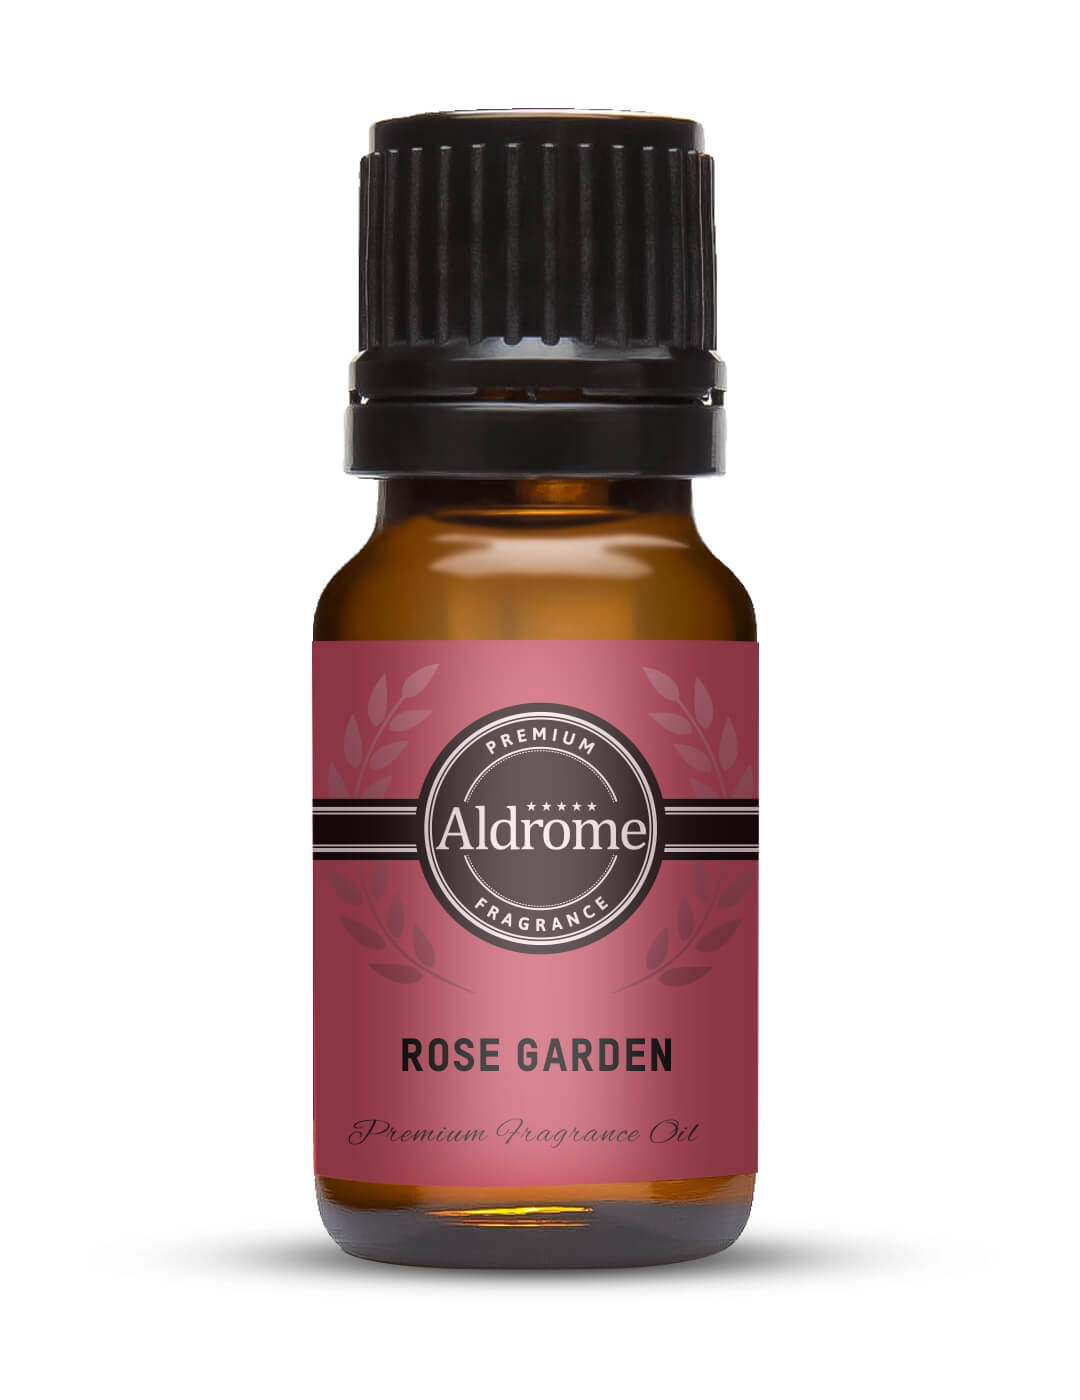 Rose Garden Fragrance Oil - 10ml | Buy Rose Garden Fragrance Oil | Aldrome Premium Fragrance Oil